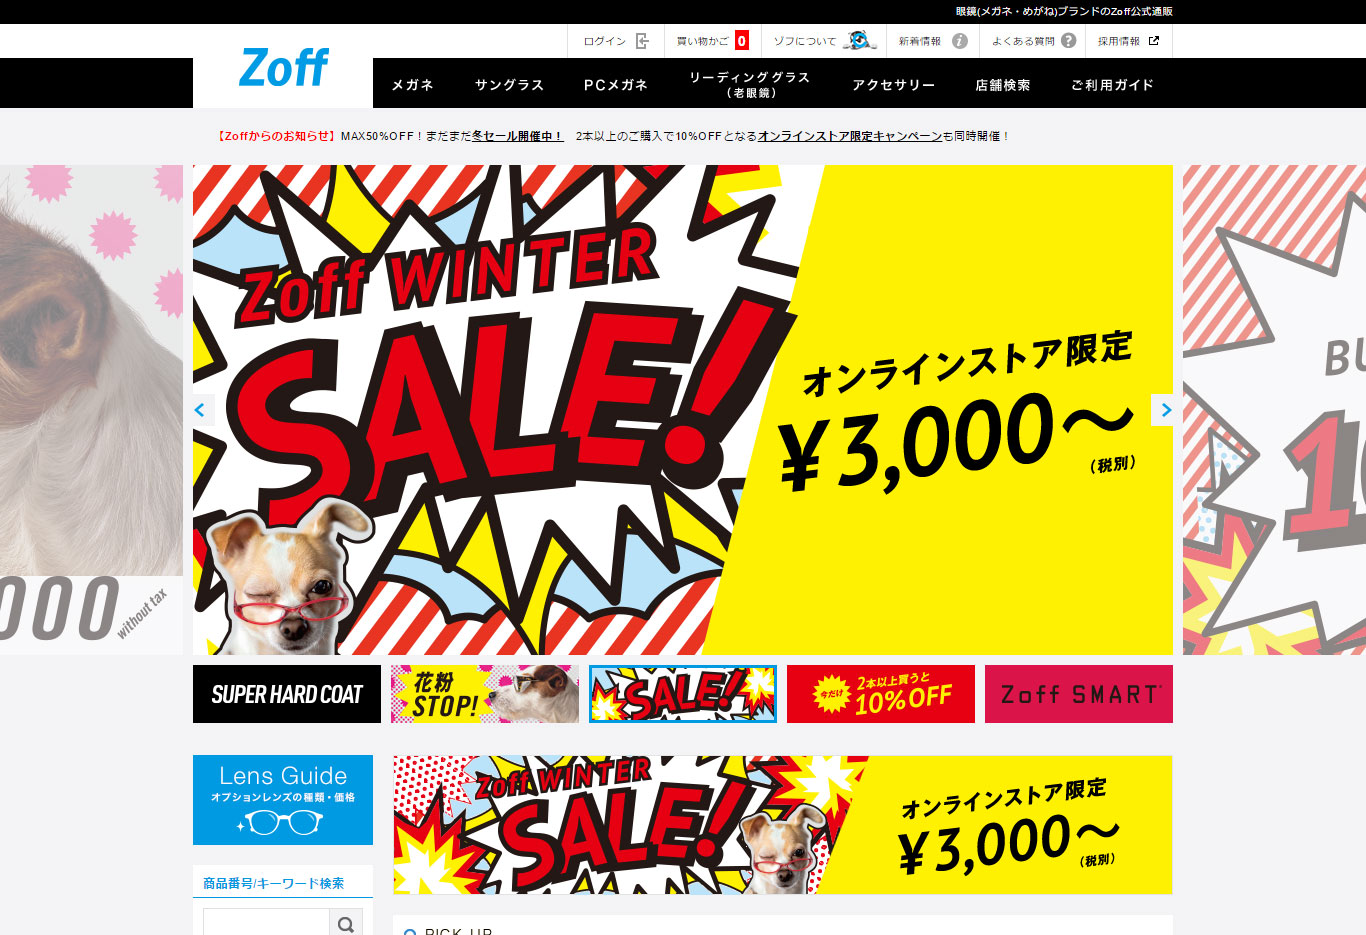 Zoff(ゾフ)通販サイトのご案内の画像